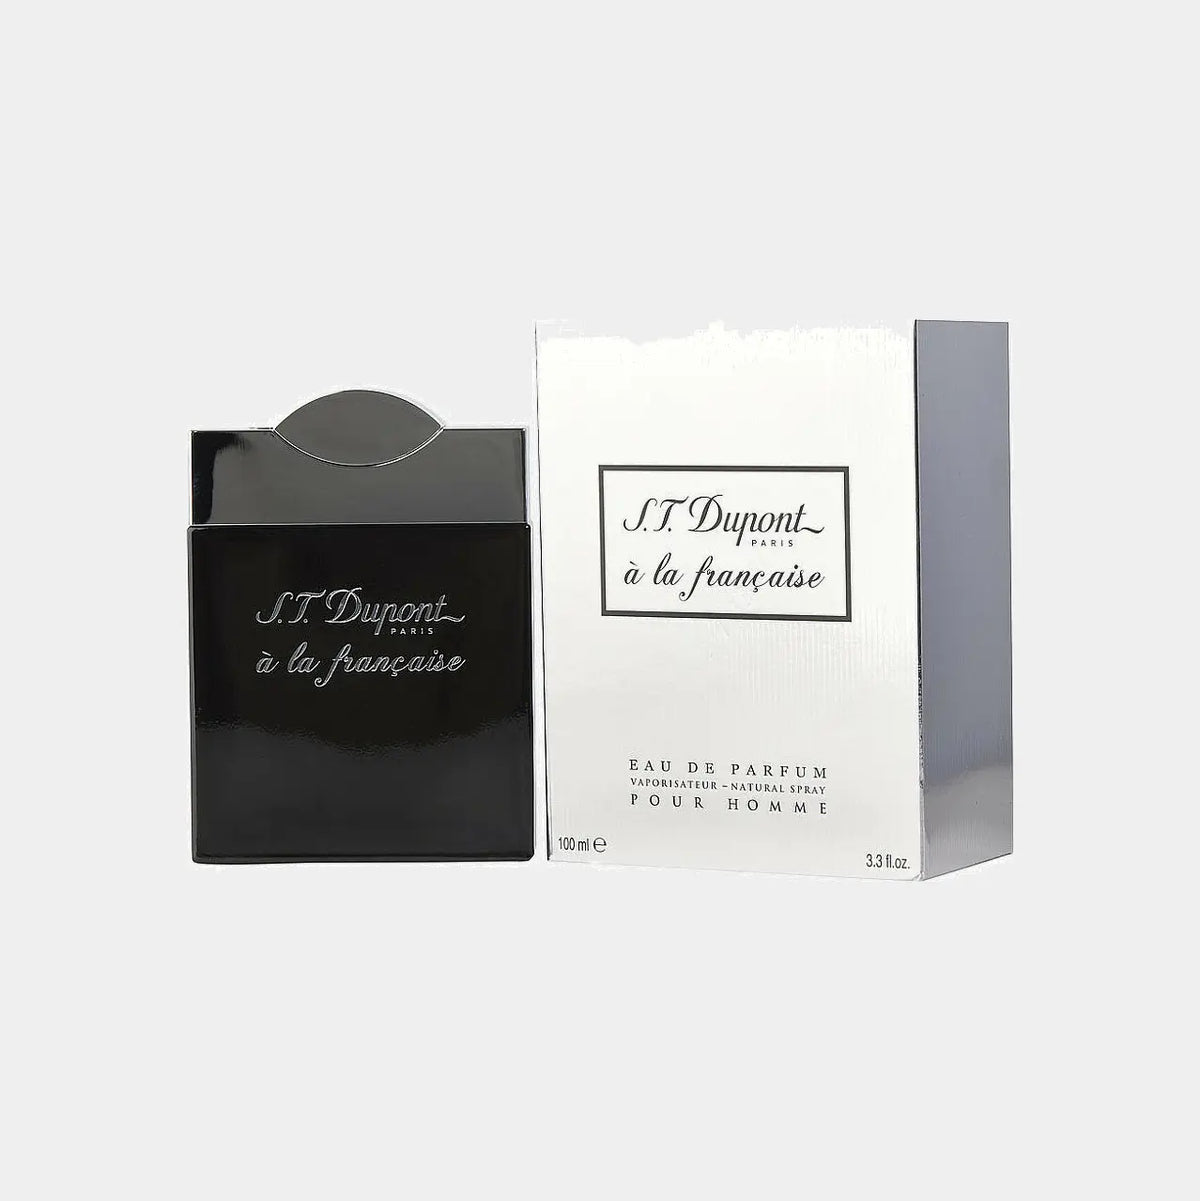 S.t. Dupont à La Française Pour Homme Eau de parfum - Eau de parfum, МУЖСКИЕ ДУХИ